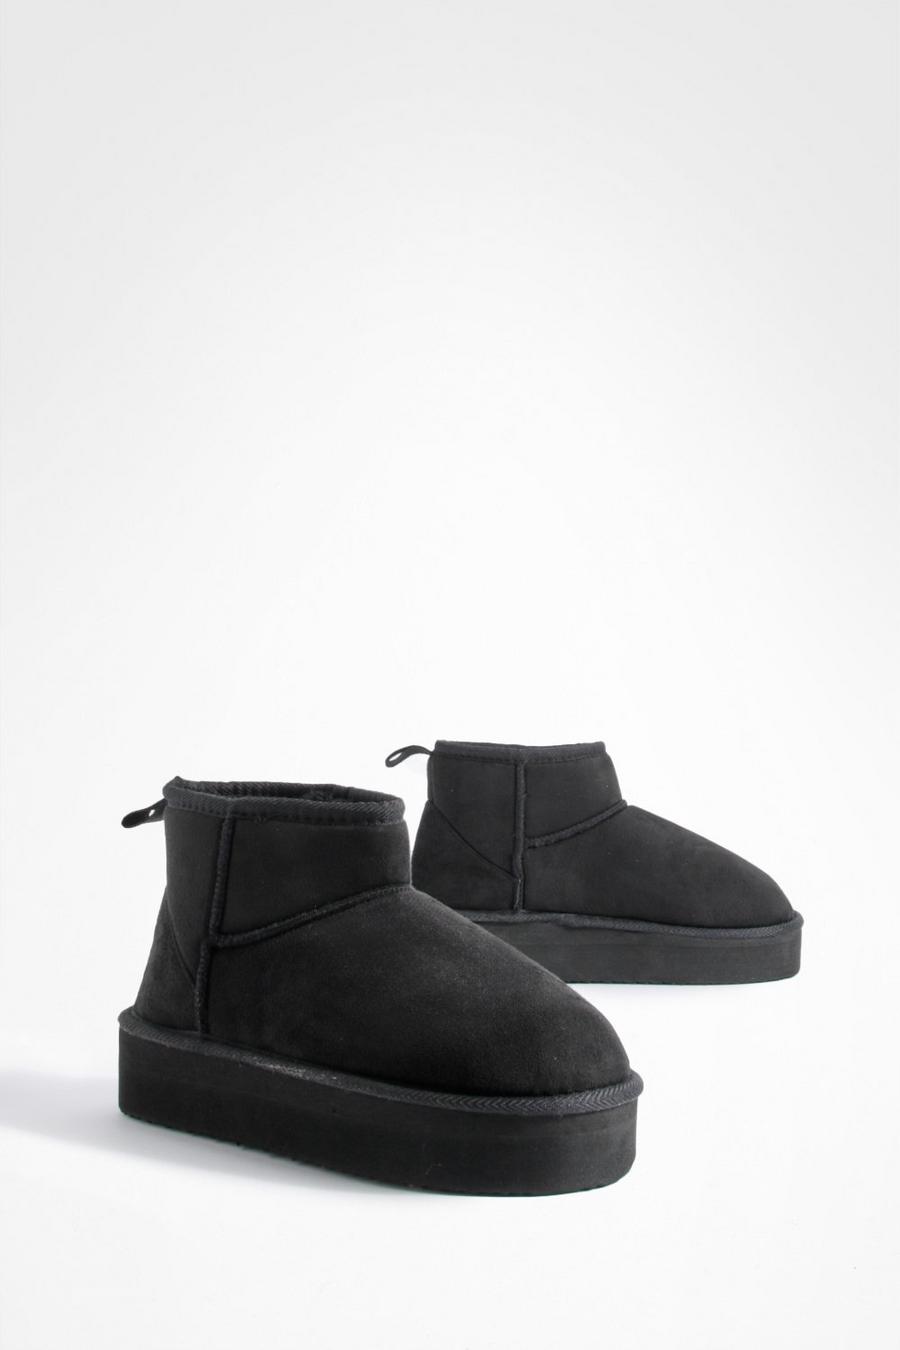 Black Platform Cozy Ankle Boots